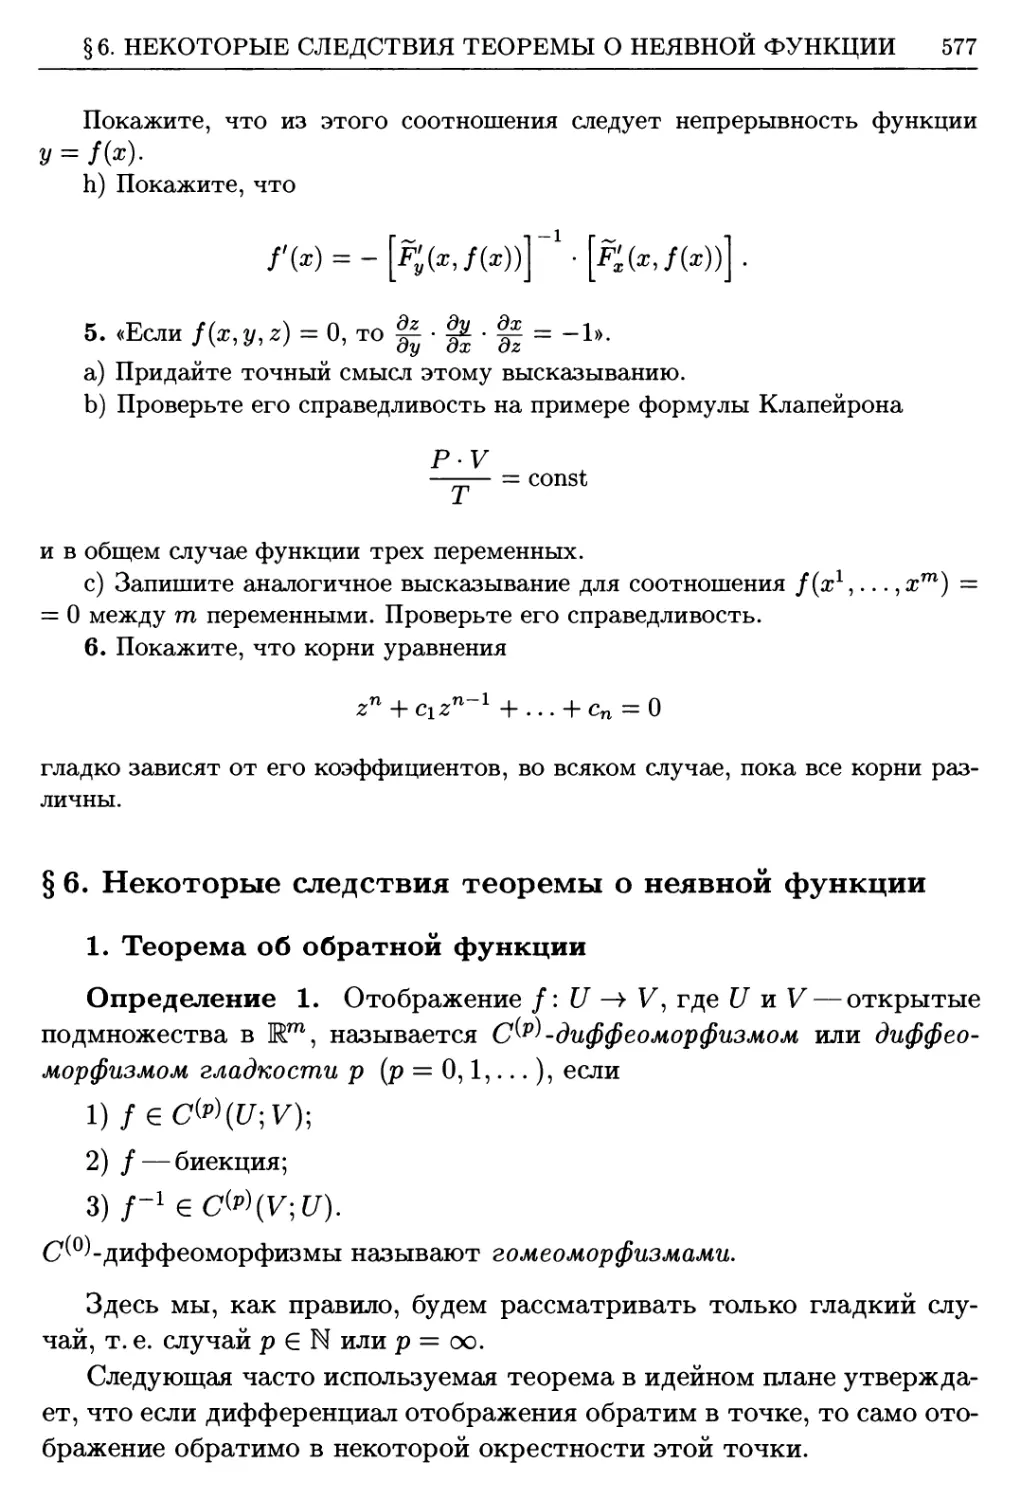 §6. Некоторые следствия теоремы о неявной функции